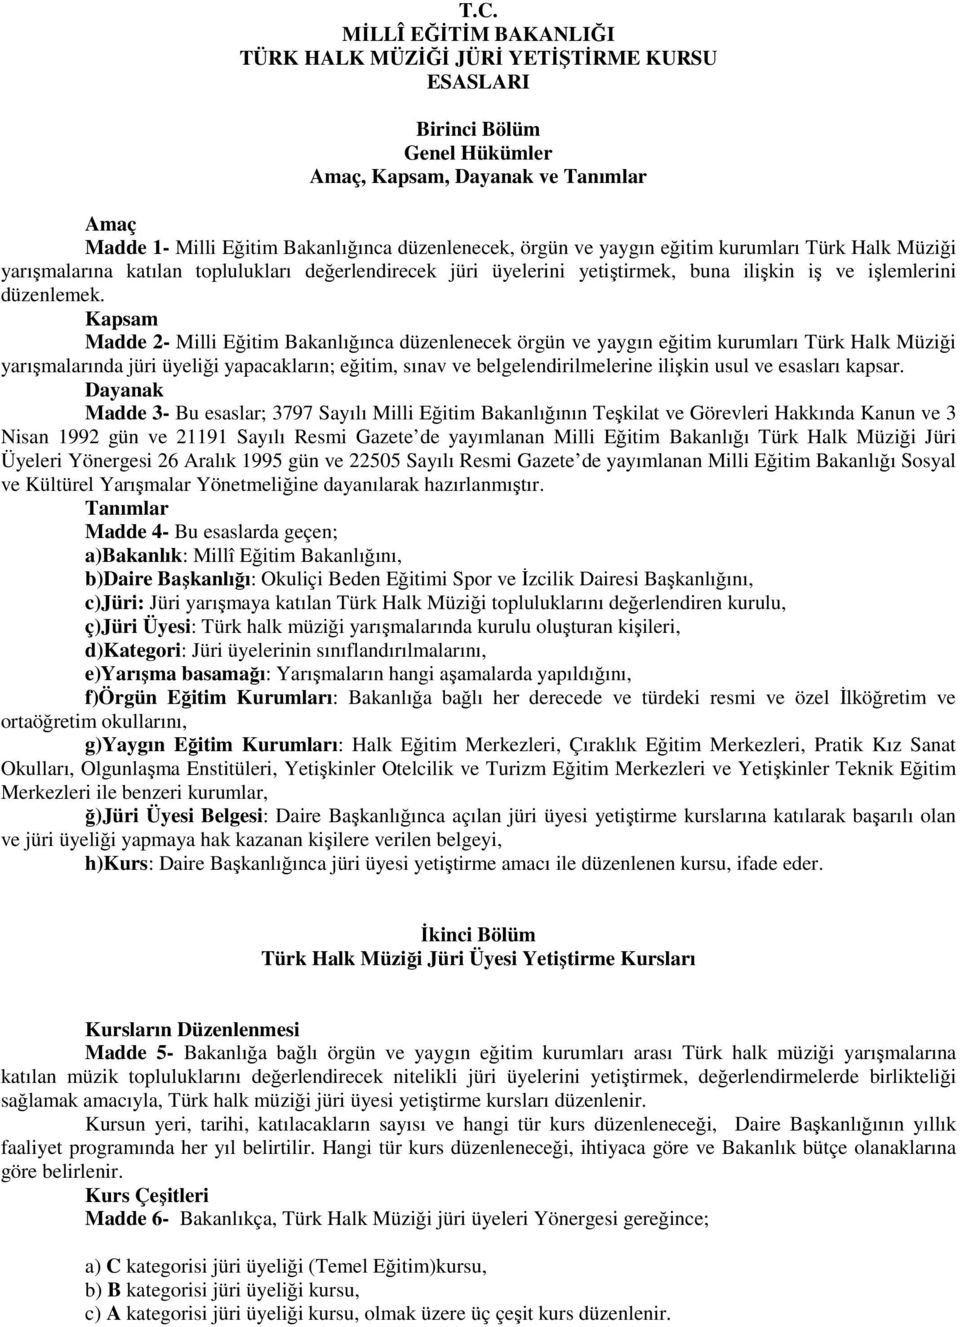 Kapsam Madde 2- Milli Eğitim Bakanlığınca düzenlenecek örgün ve yaygın eğitim kurumları Türk Halk Müziği yarışmalarında jüri üyeliği yapacakların; eğitim, sınav ve belgelendirilmelerine ilişkin usul